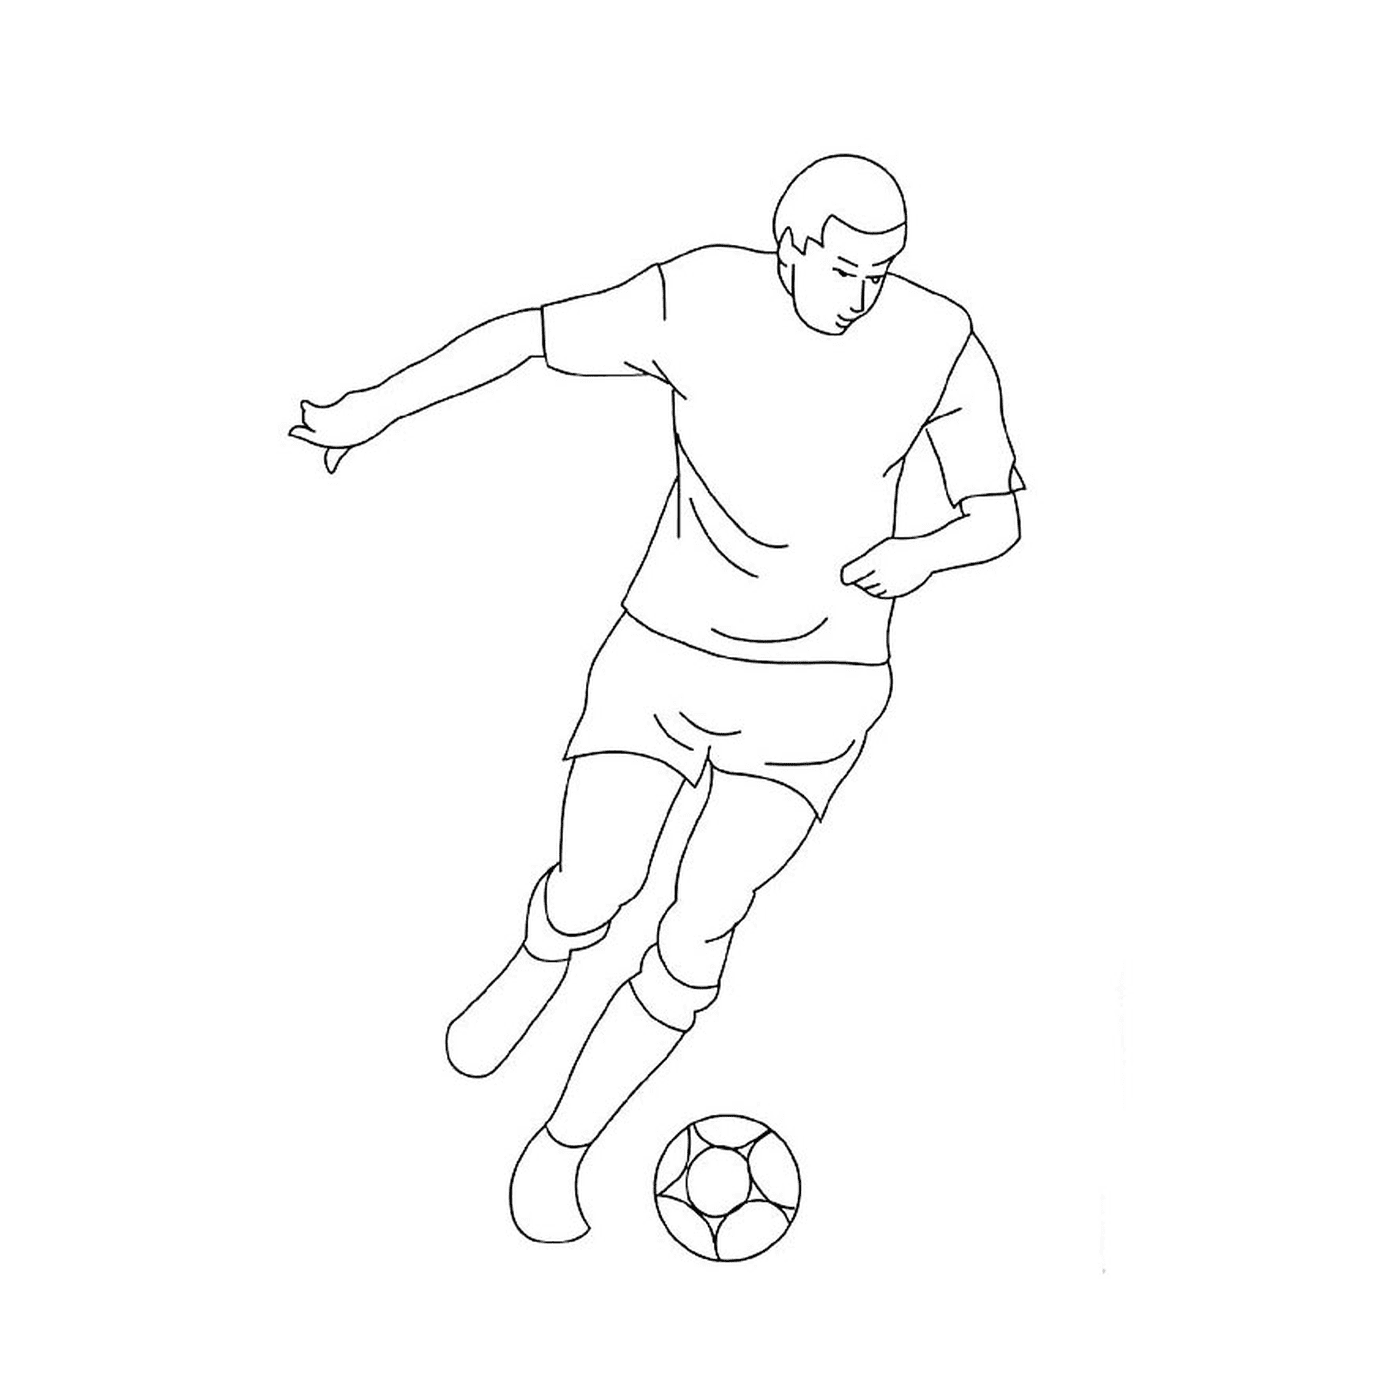  Um homem joga futebol 